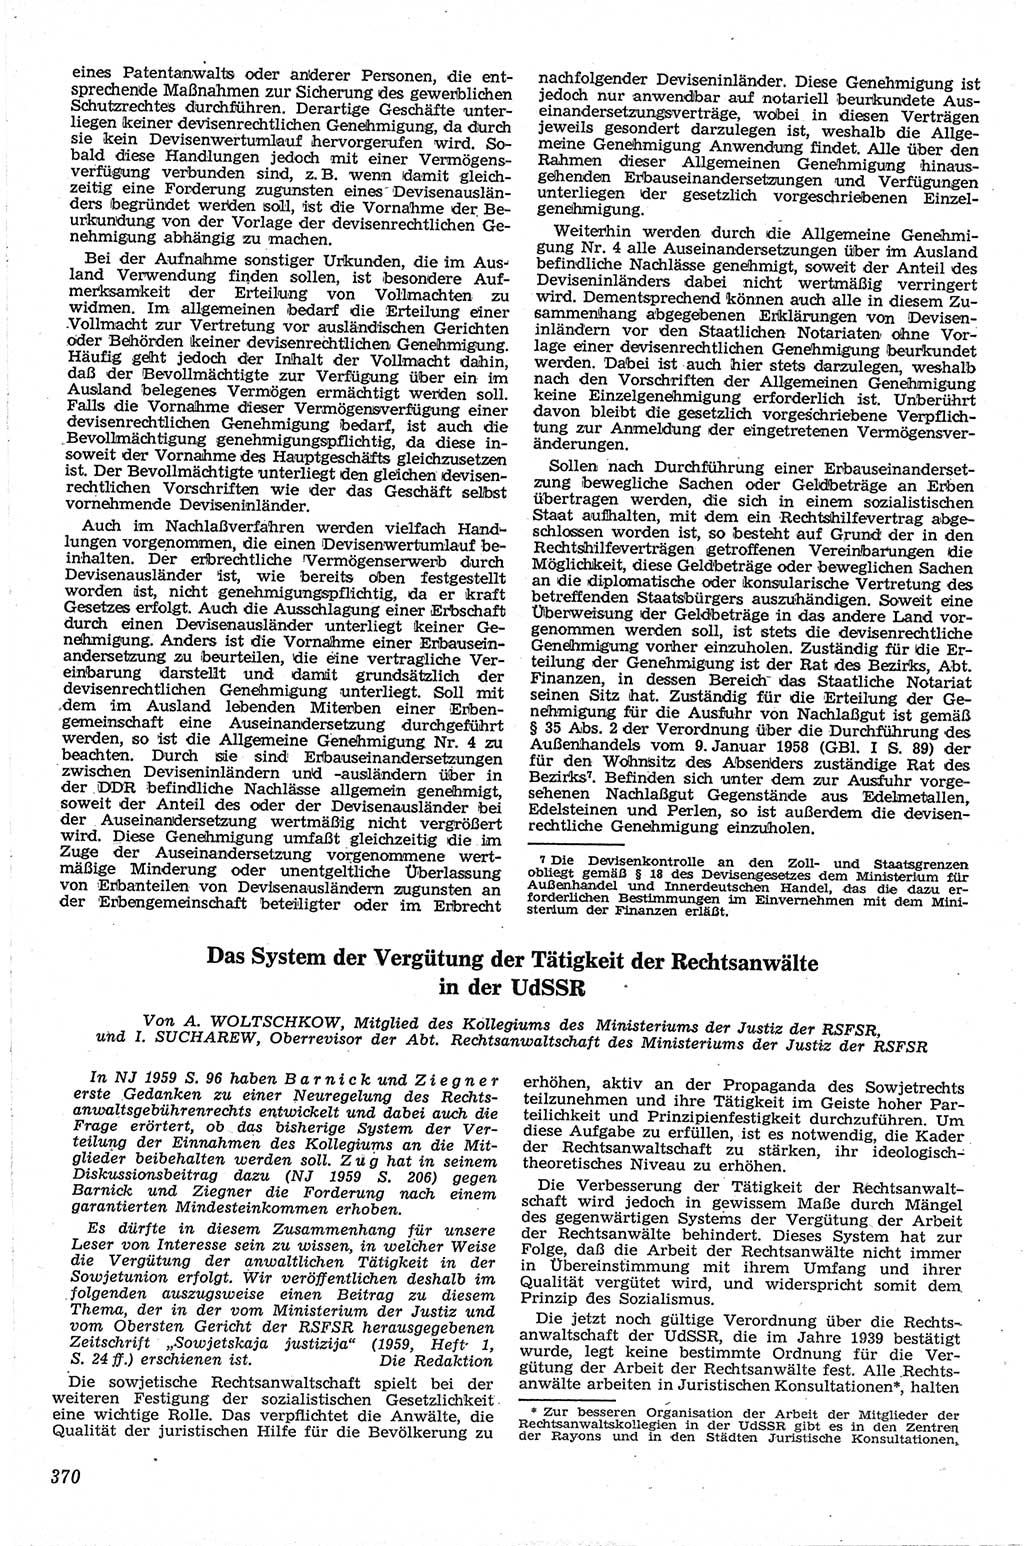 Neue Justiz (NJ), Zeitschrift für Recht und Rechtswissenschaft [Deutsche Demokratische Republik (DDR)], 13. Jahrgang 1959, Seite 370 (NJ DDR 1959, S. 370)